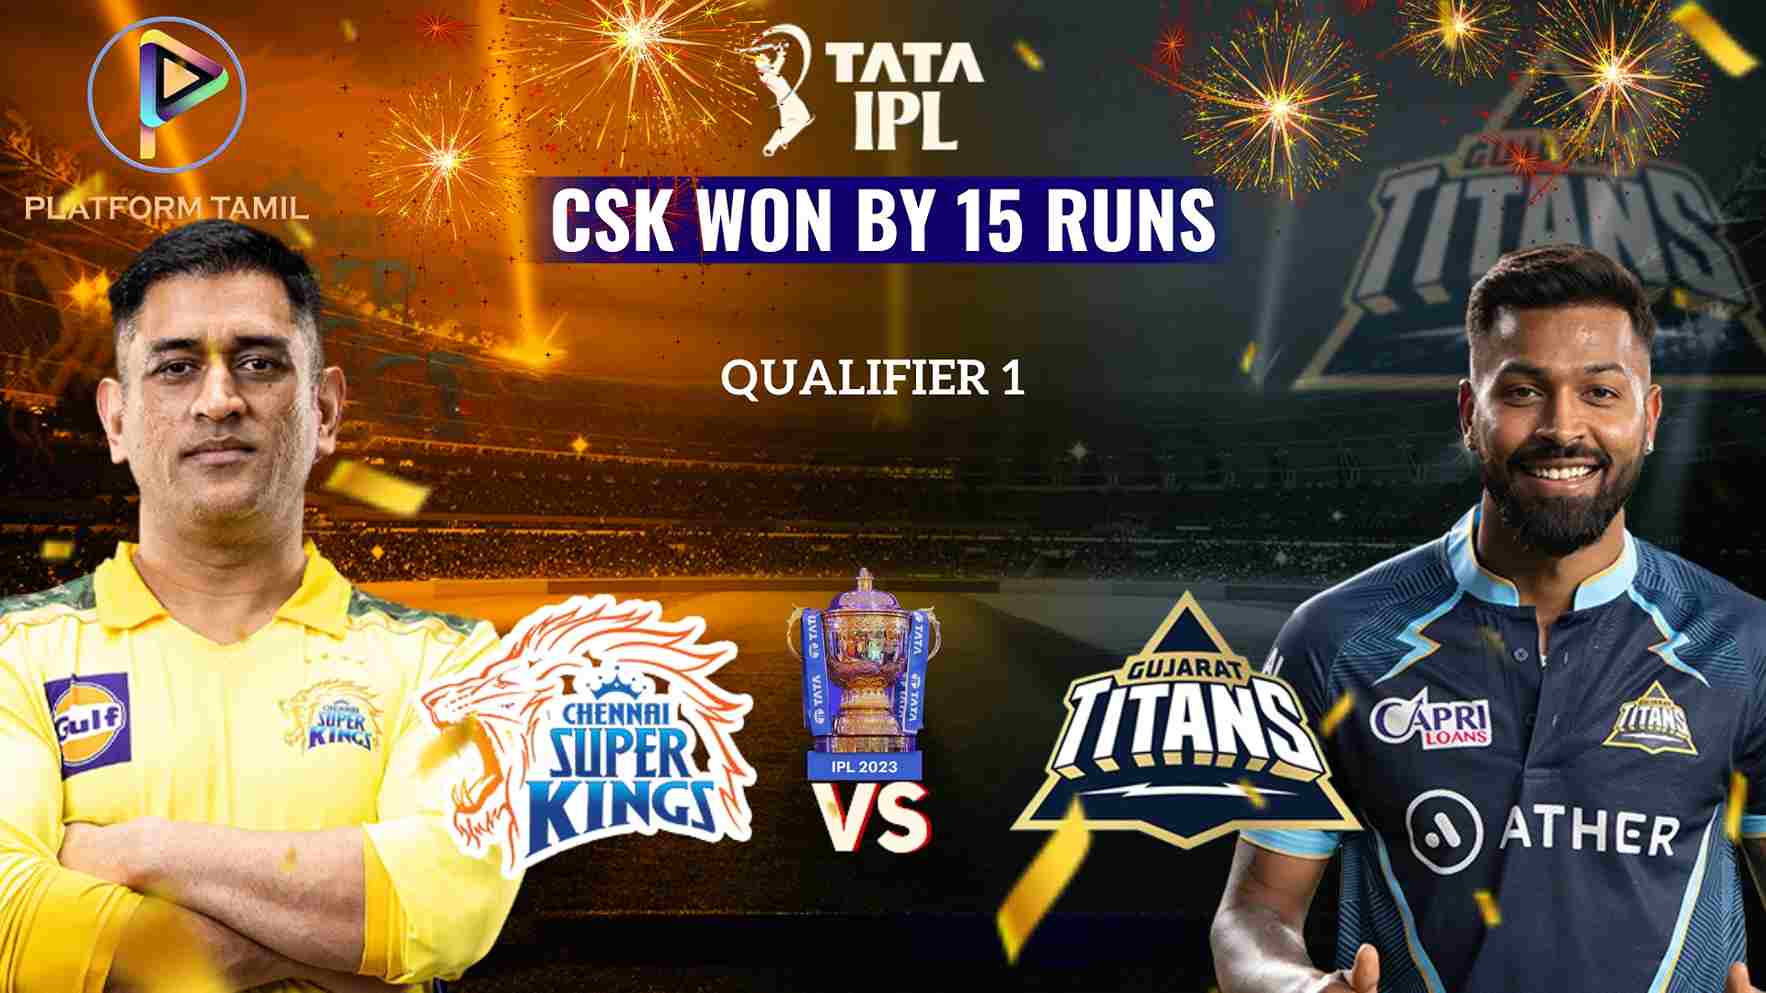 IPL 2023 Qualifier 1 CSK vs GT - Platform Tamil